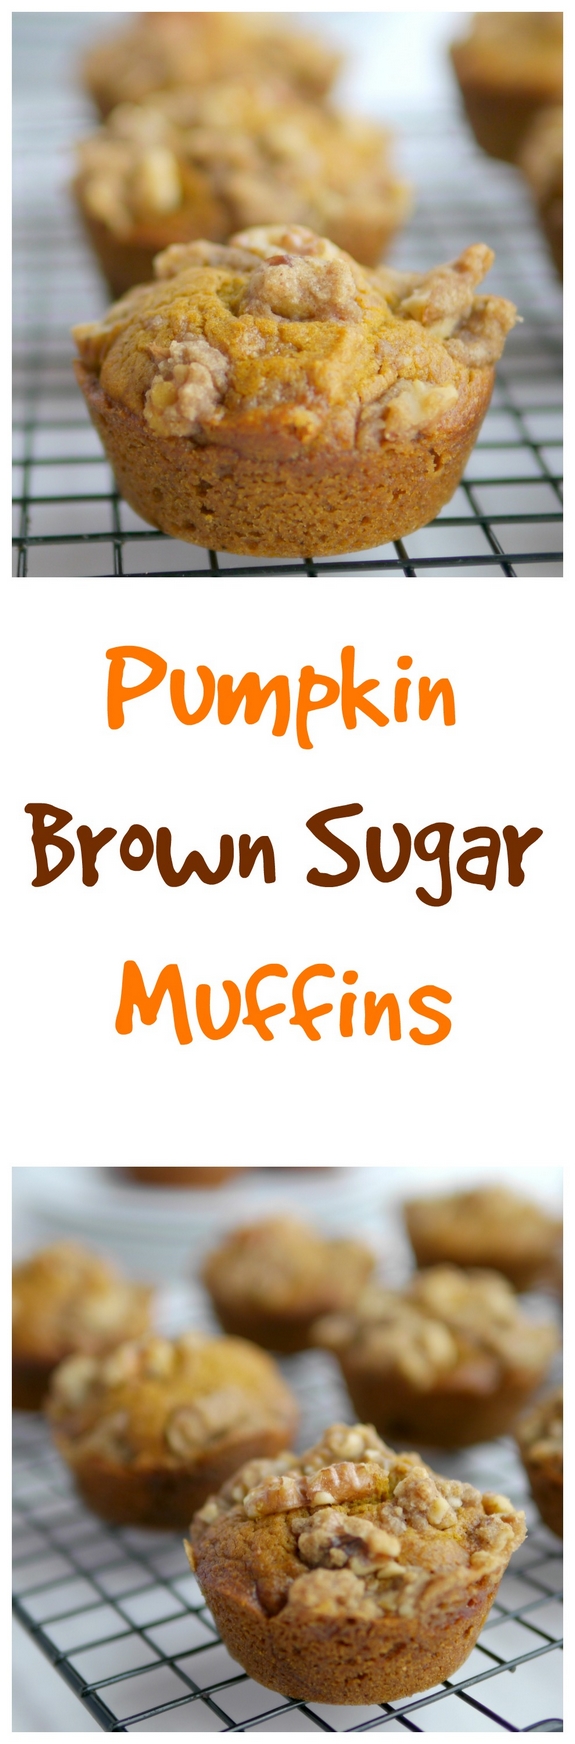 Pumpkin Brown Sugar Muffins